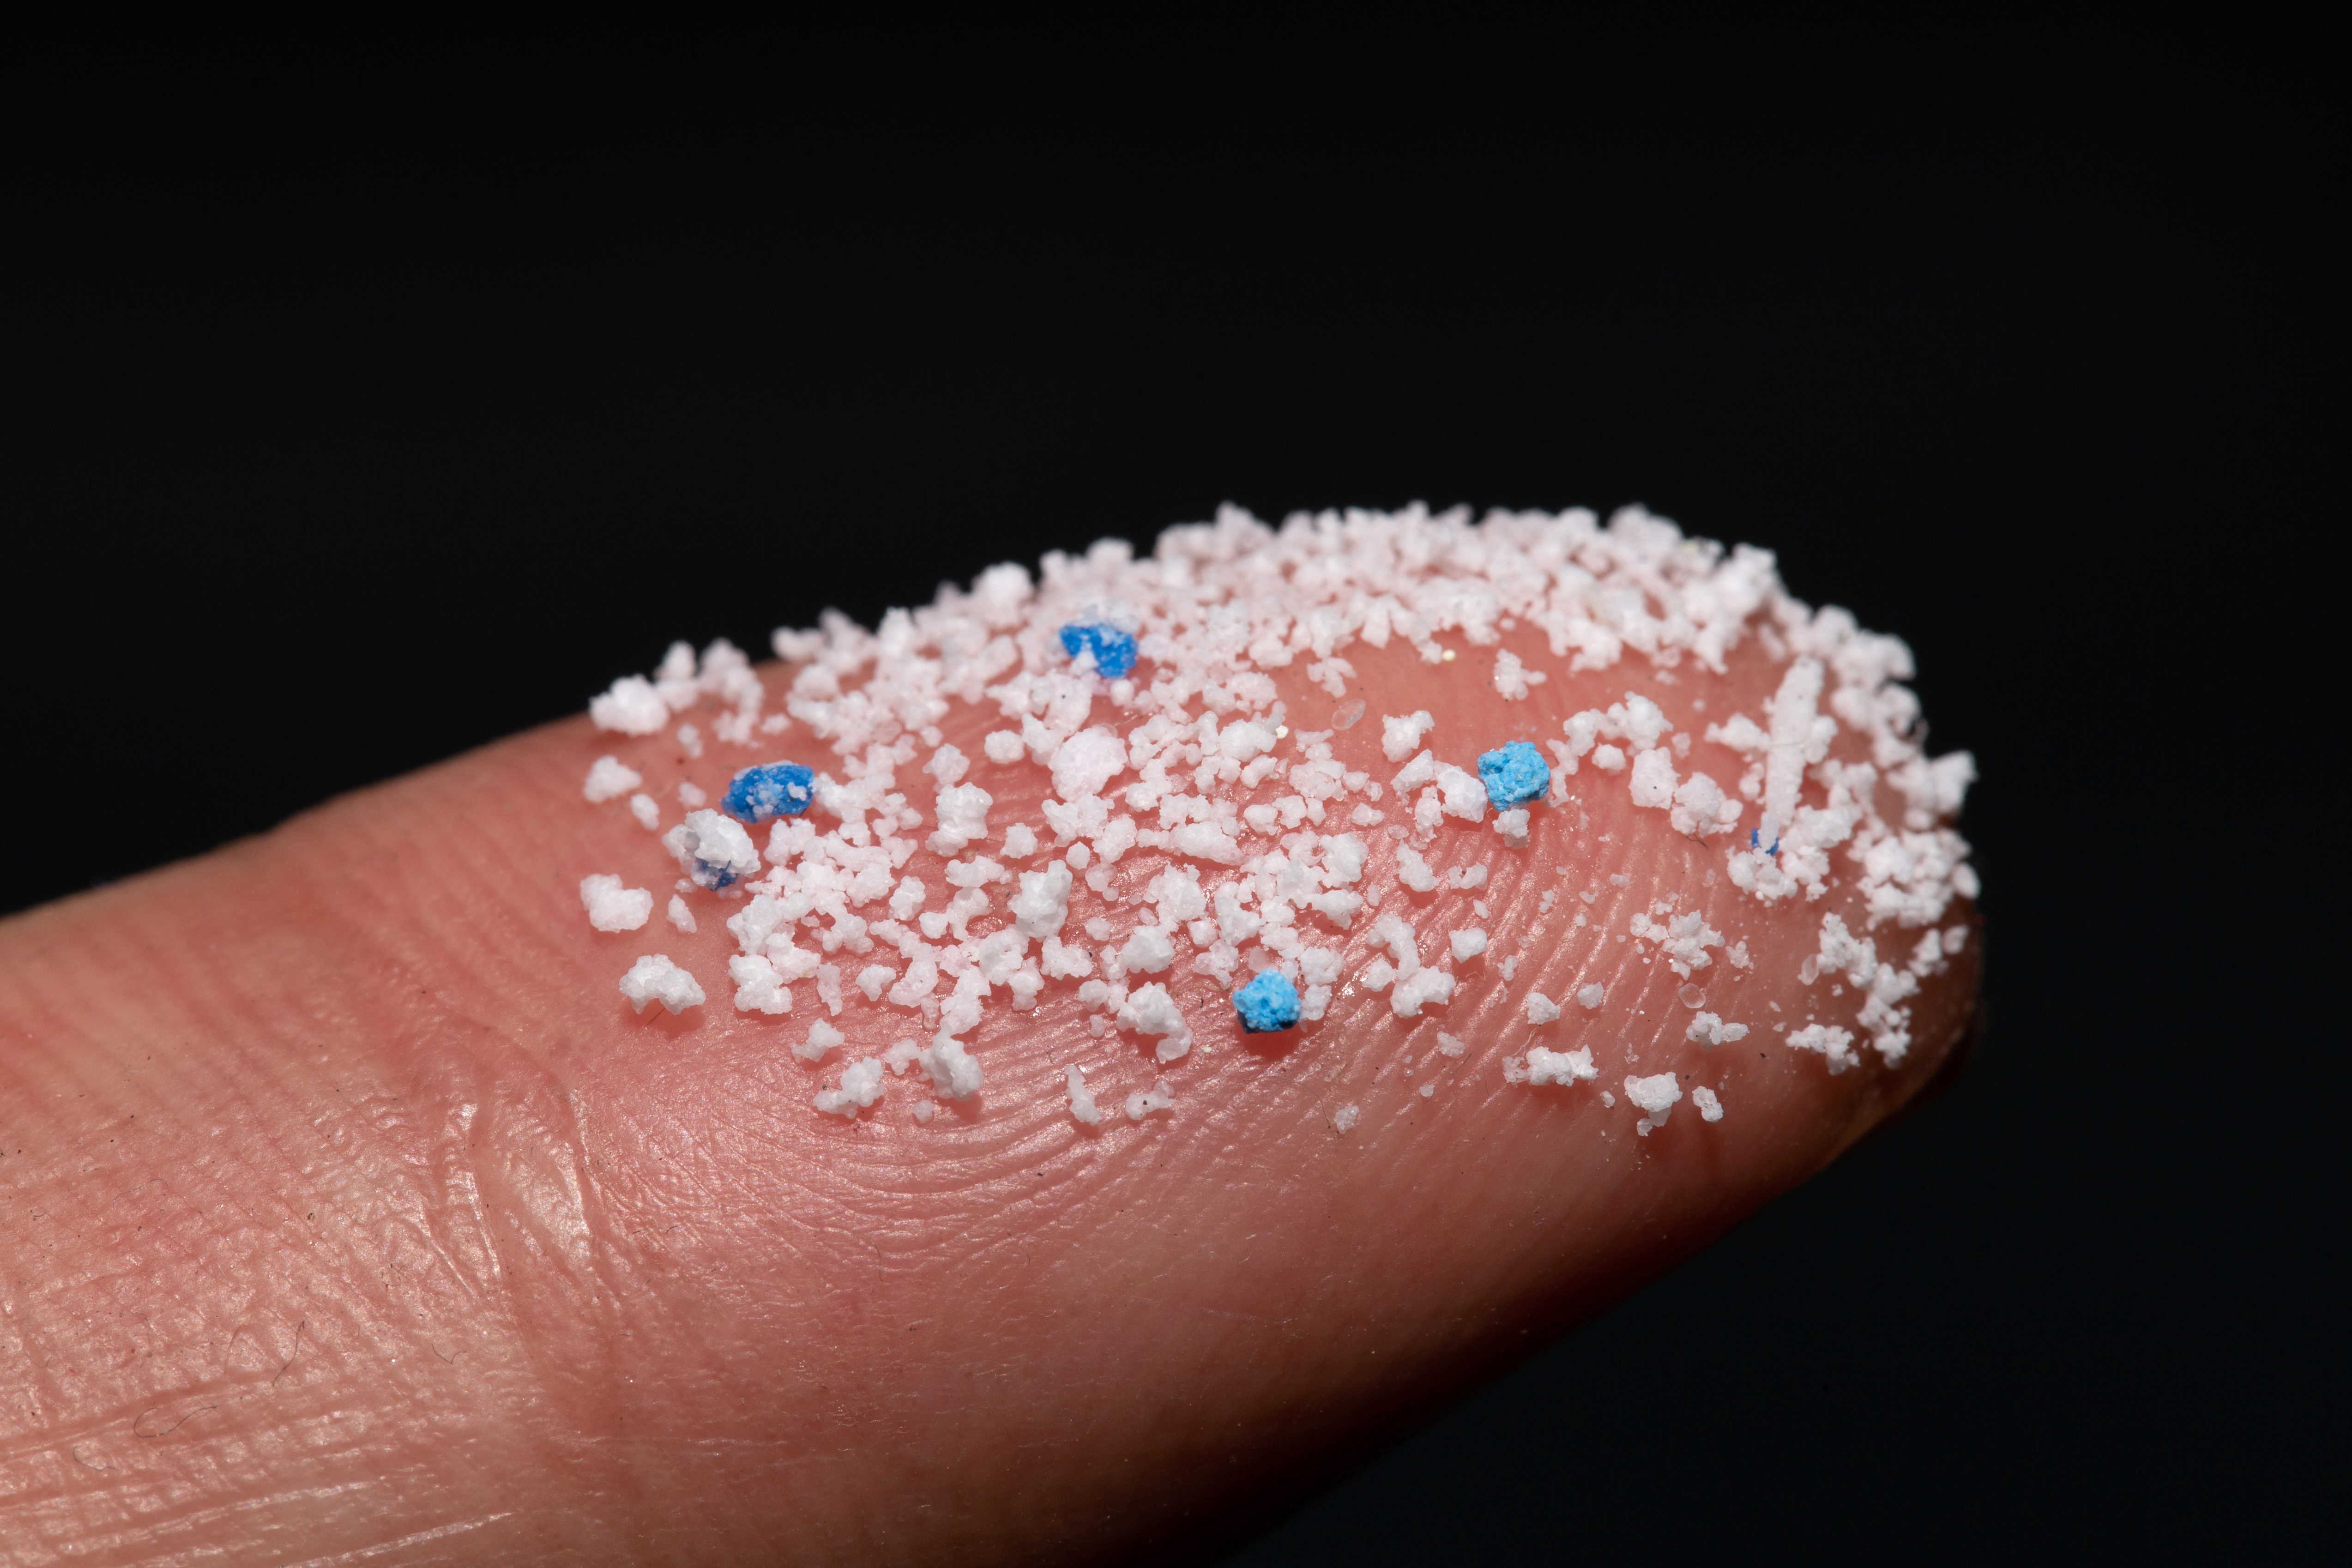 Los microplásticos son pequeñas piezas de plástico tan diminutas que pueden medir 5 mm de diámetro 